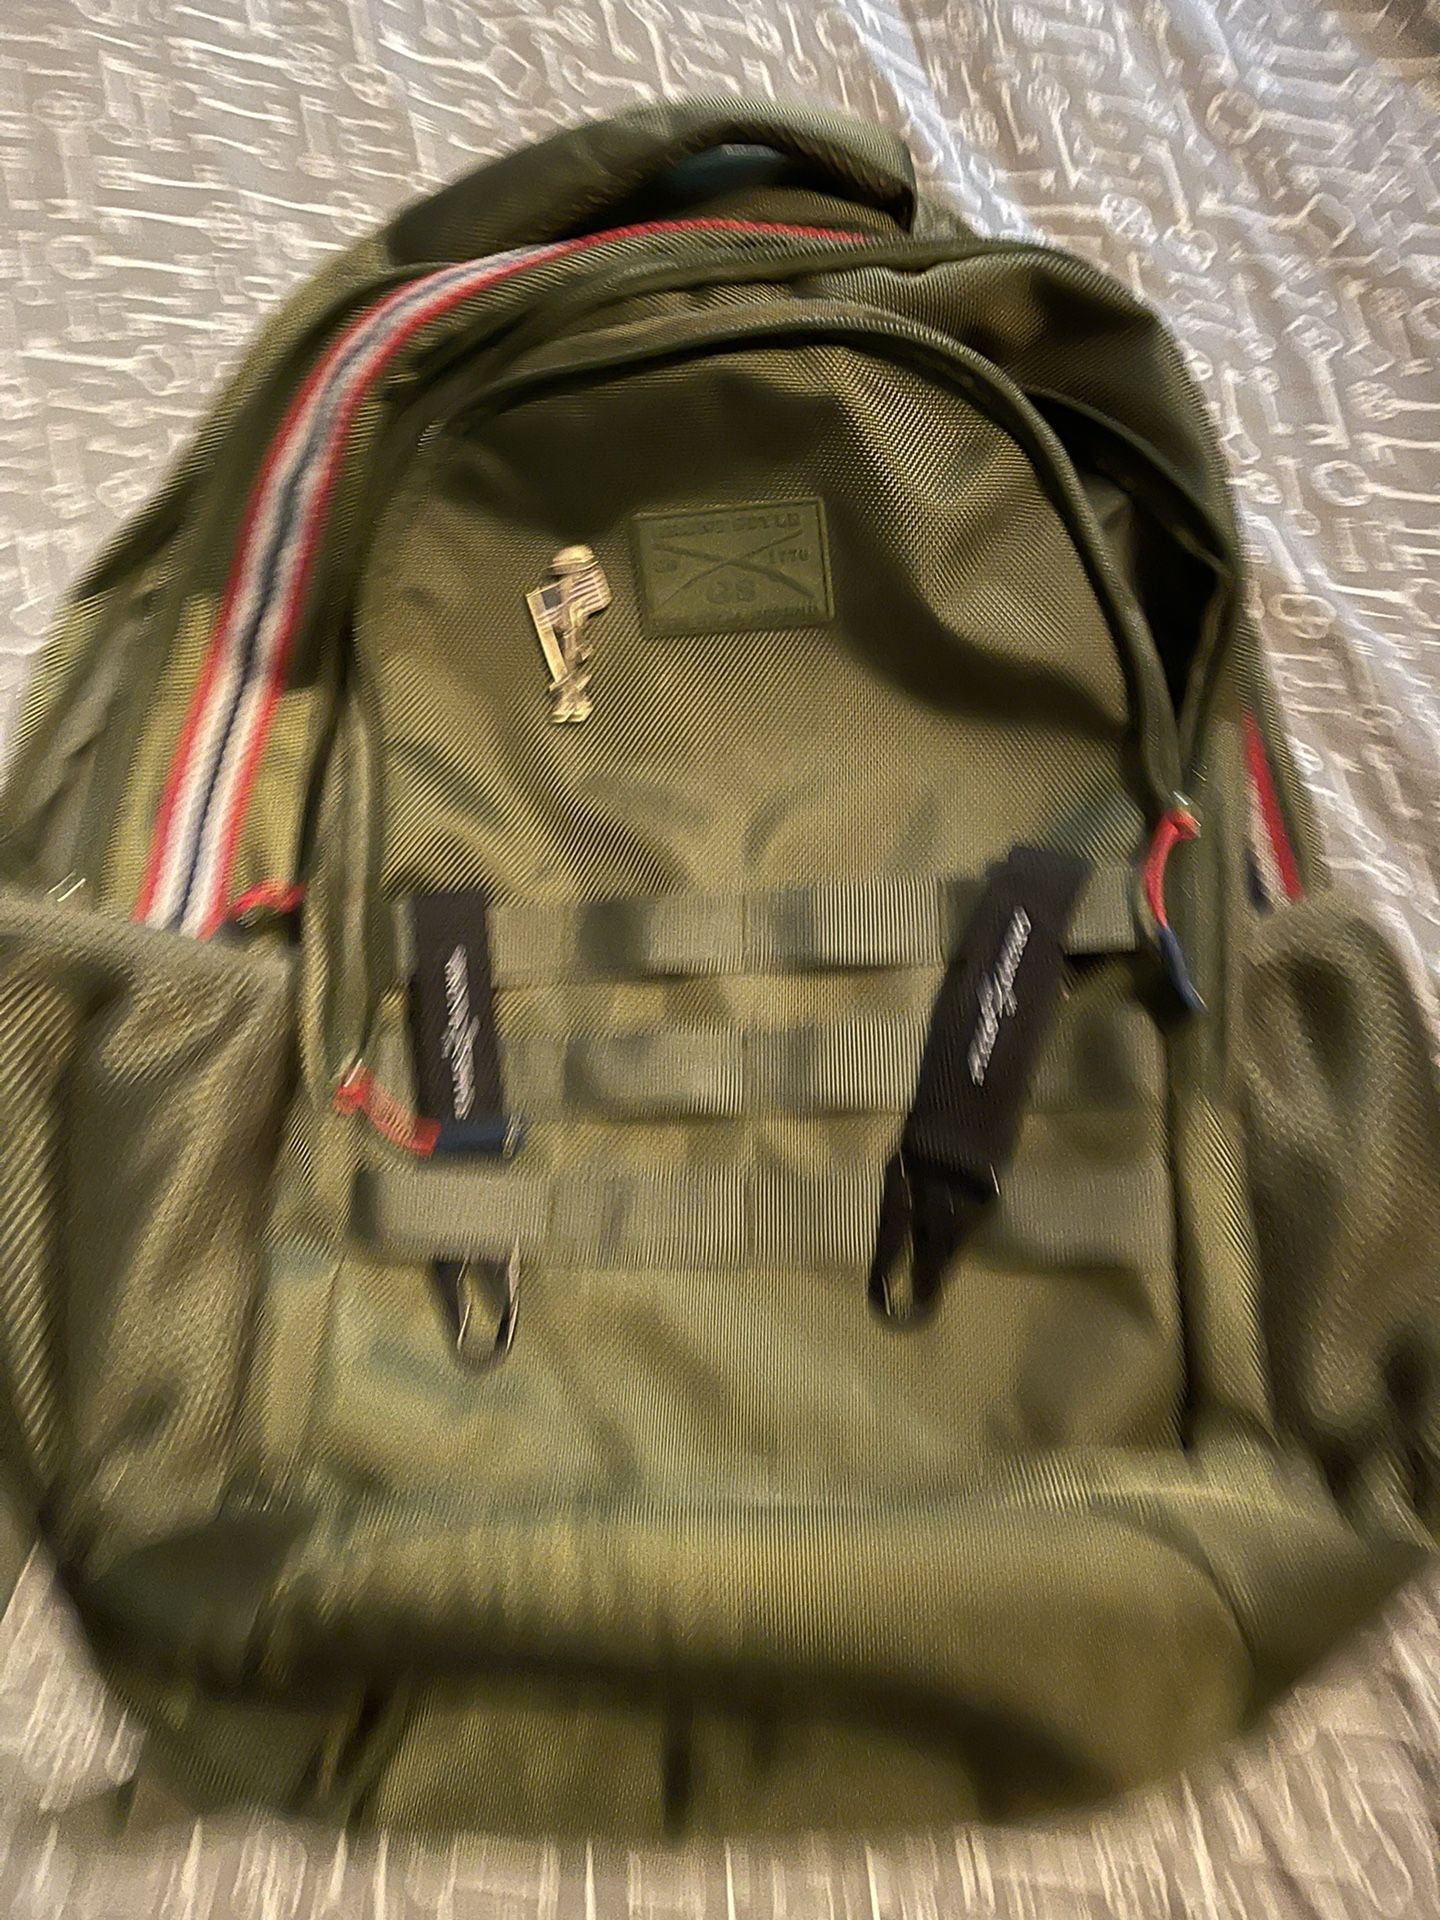 Gruntstyle Backpack 